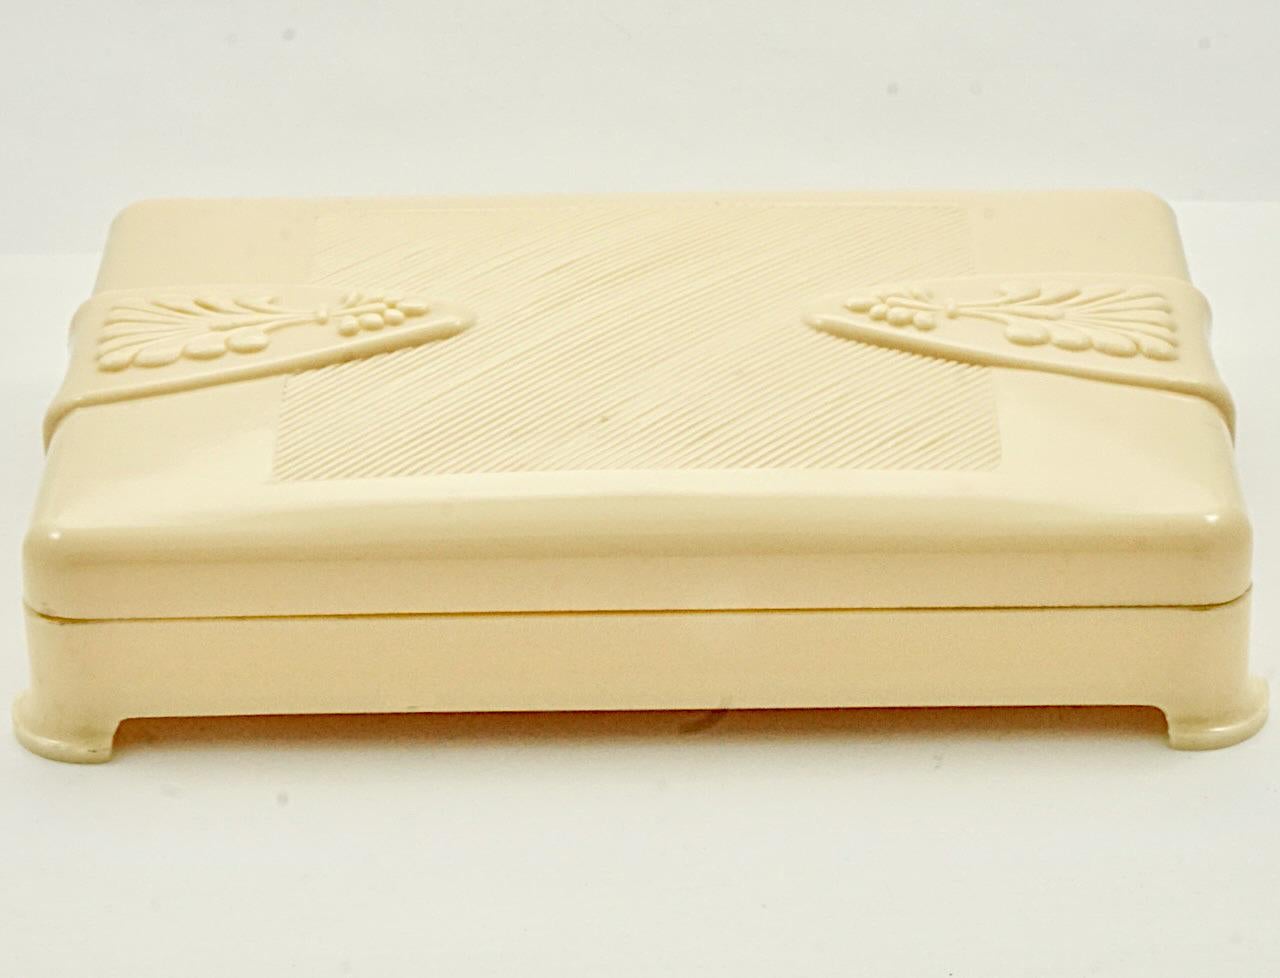 Schöne Art Deco Creme Zelluloid-Box. Länge 14,3 cm / 5,6 Zoll, Breite 9,6 cm / 3,77 Zoll und Tiefe 2,7 cm / 1 Zoll. Der Deckel ist mit einem schönen Prägedesign versehen. Die Box ist in sehr gutem Zustand. Es gibt einen Riss auf der